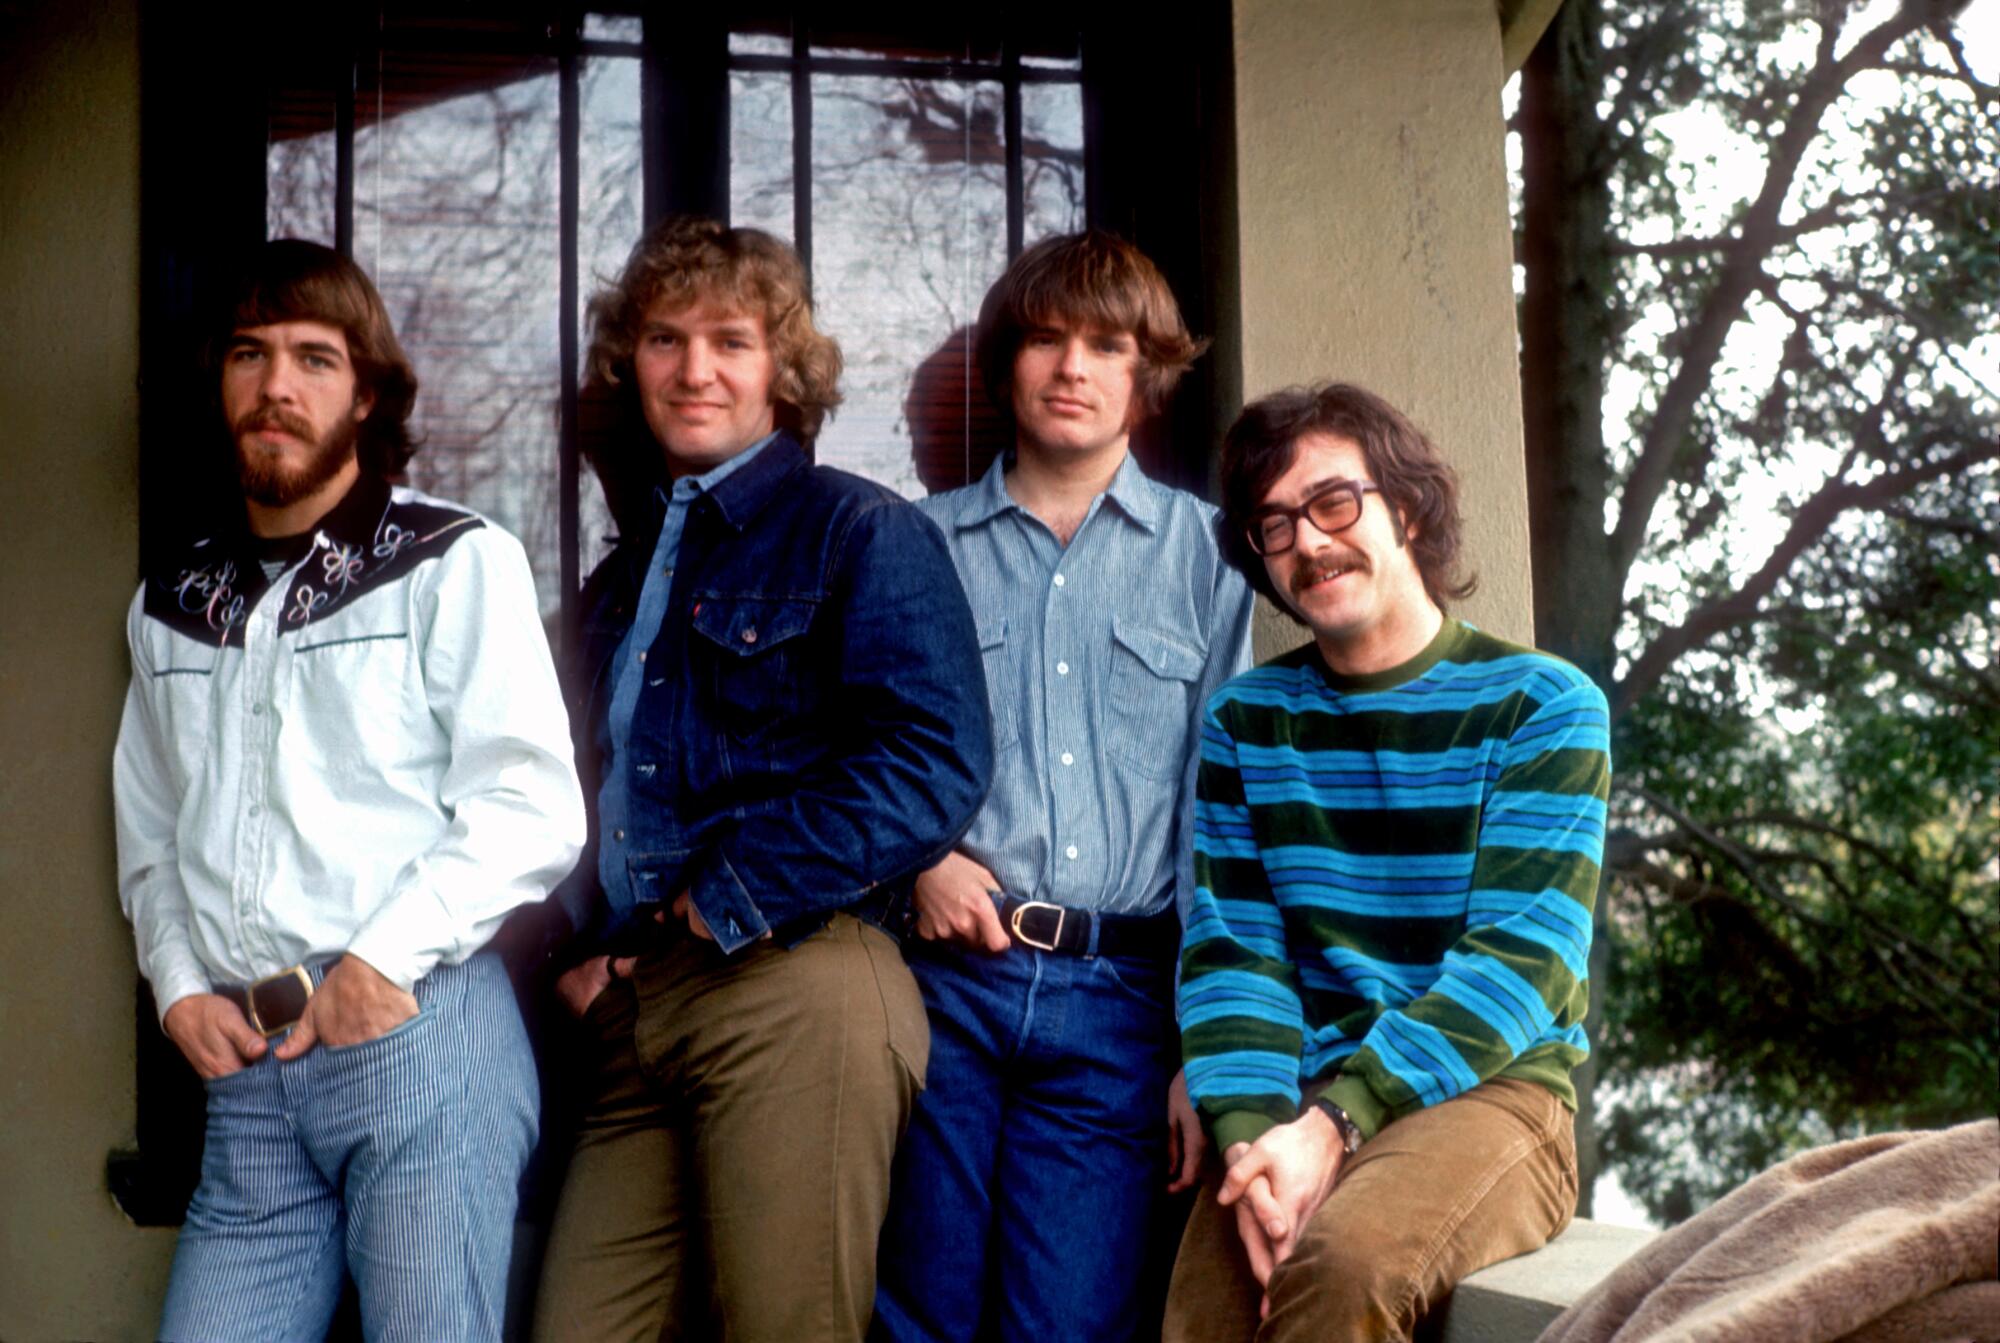 A four-piece rock band pose for a photo, circa 1970.